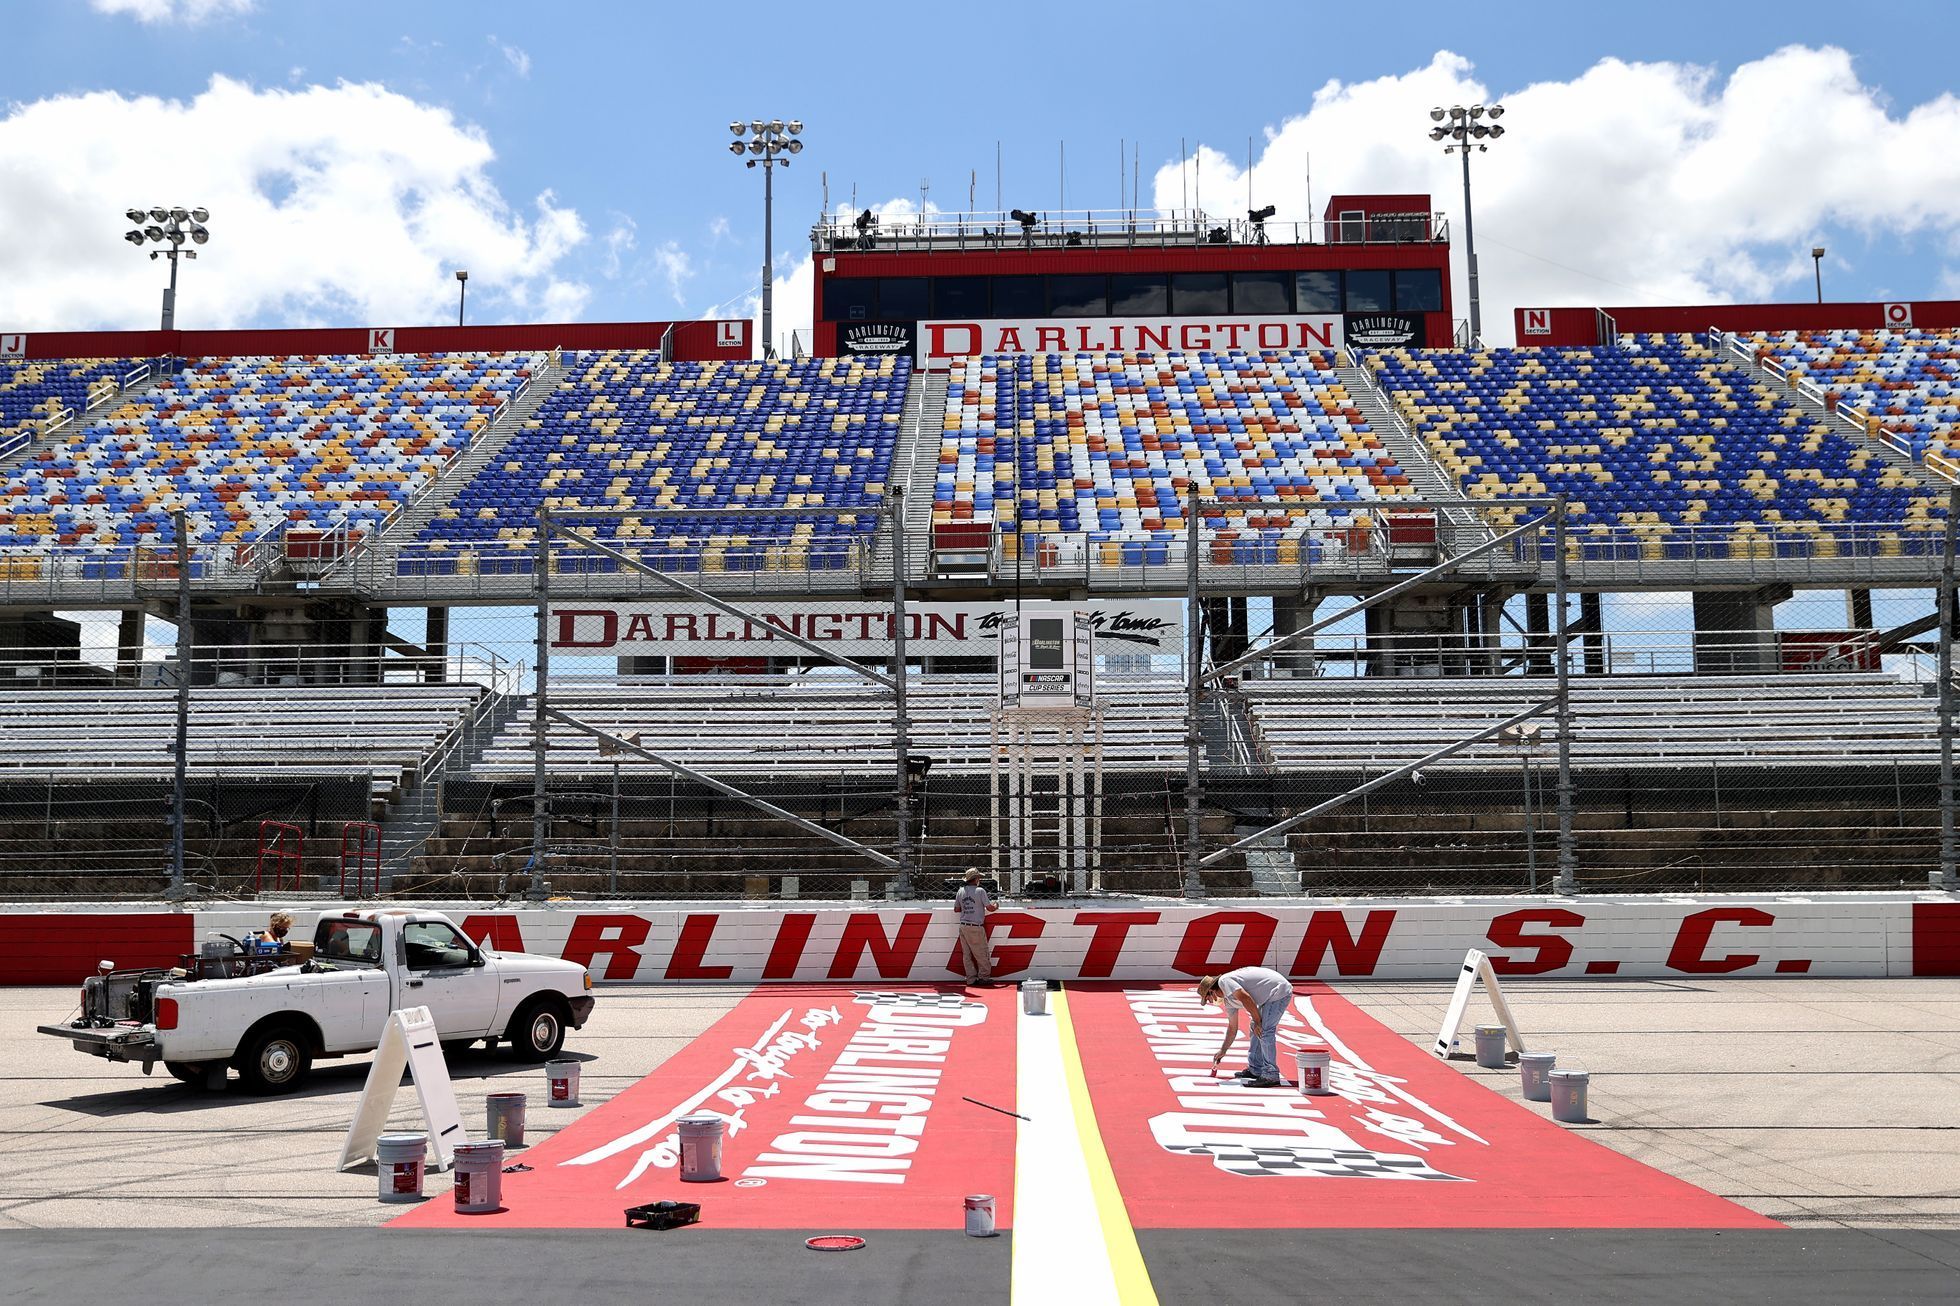 NASCAR 2020, Darlington I: přípravy na závod